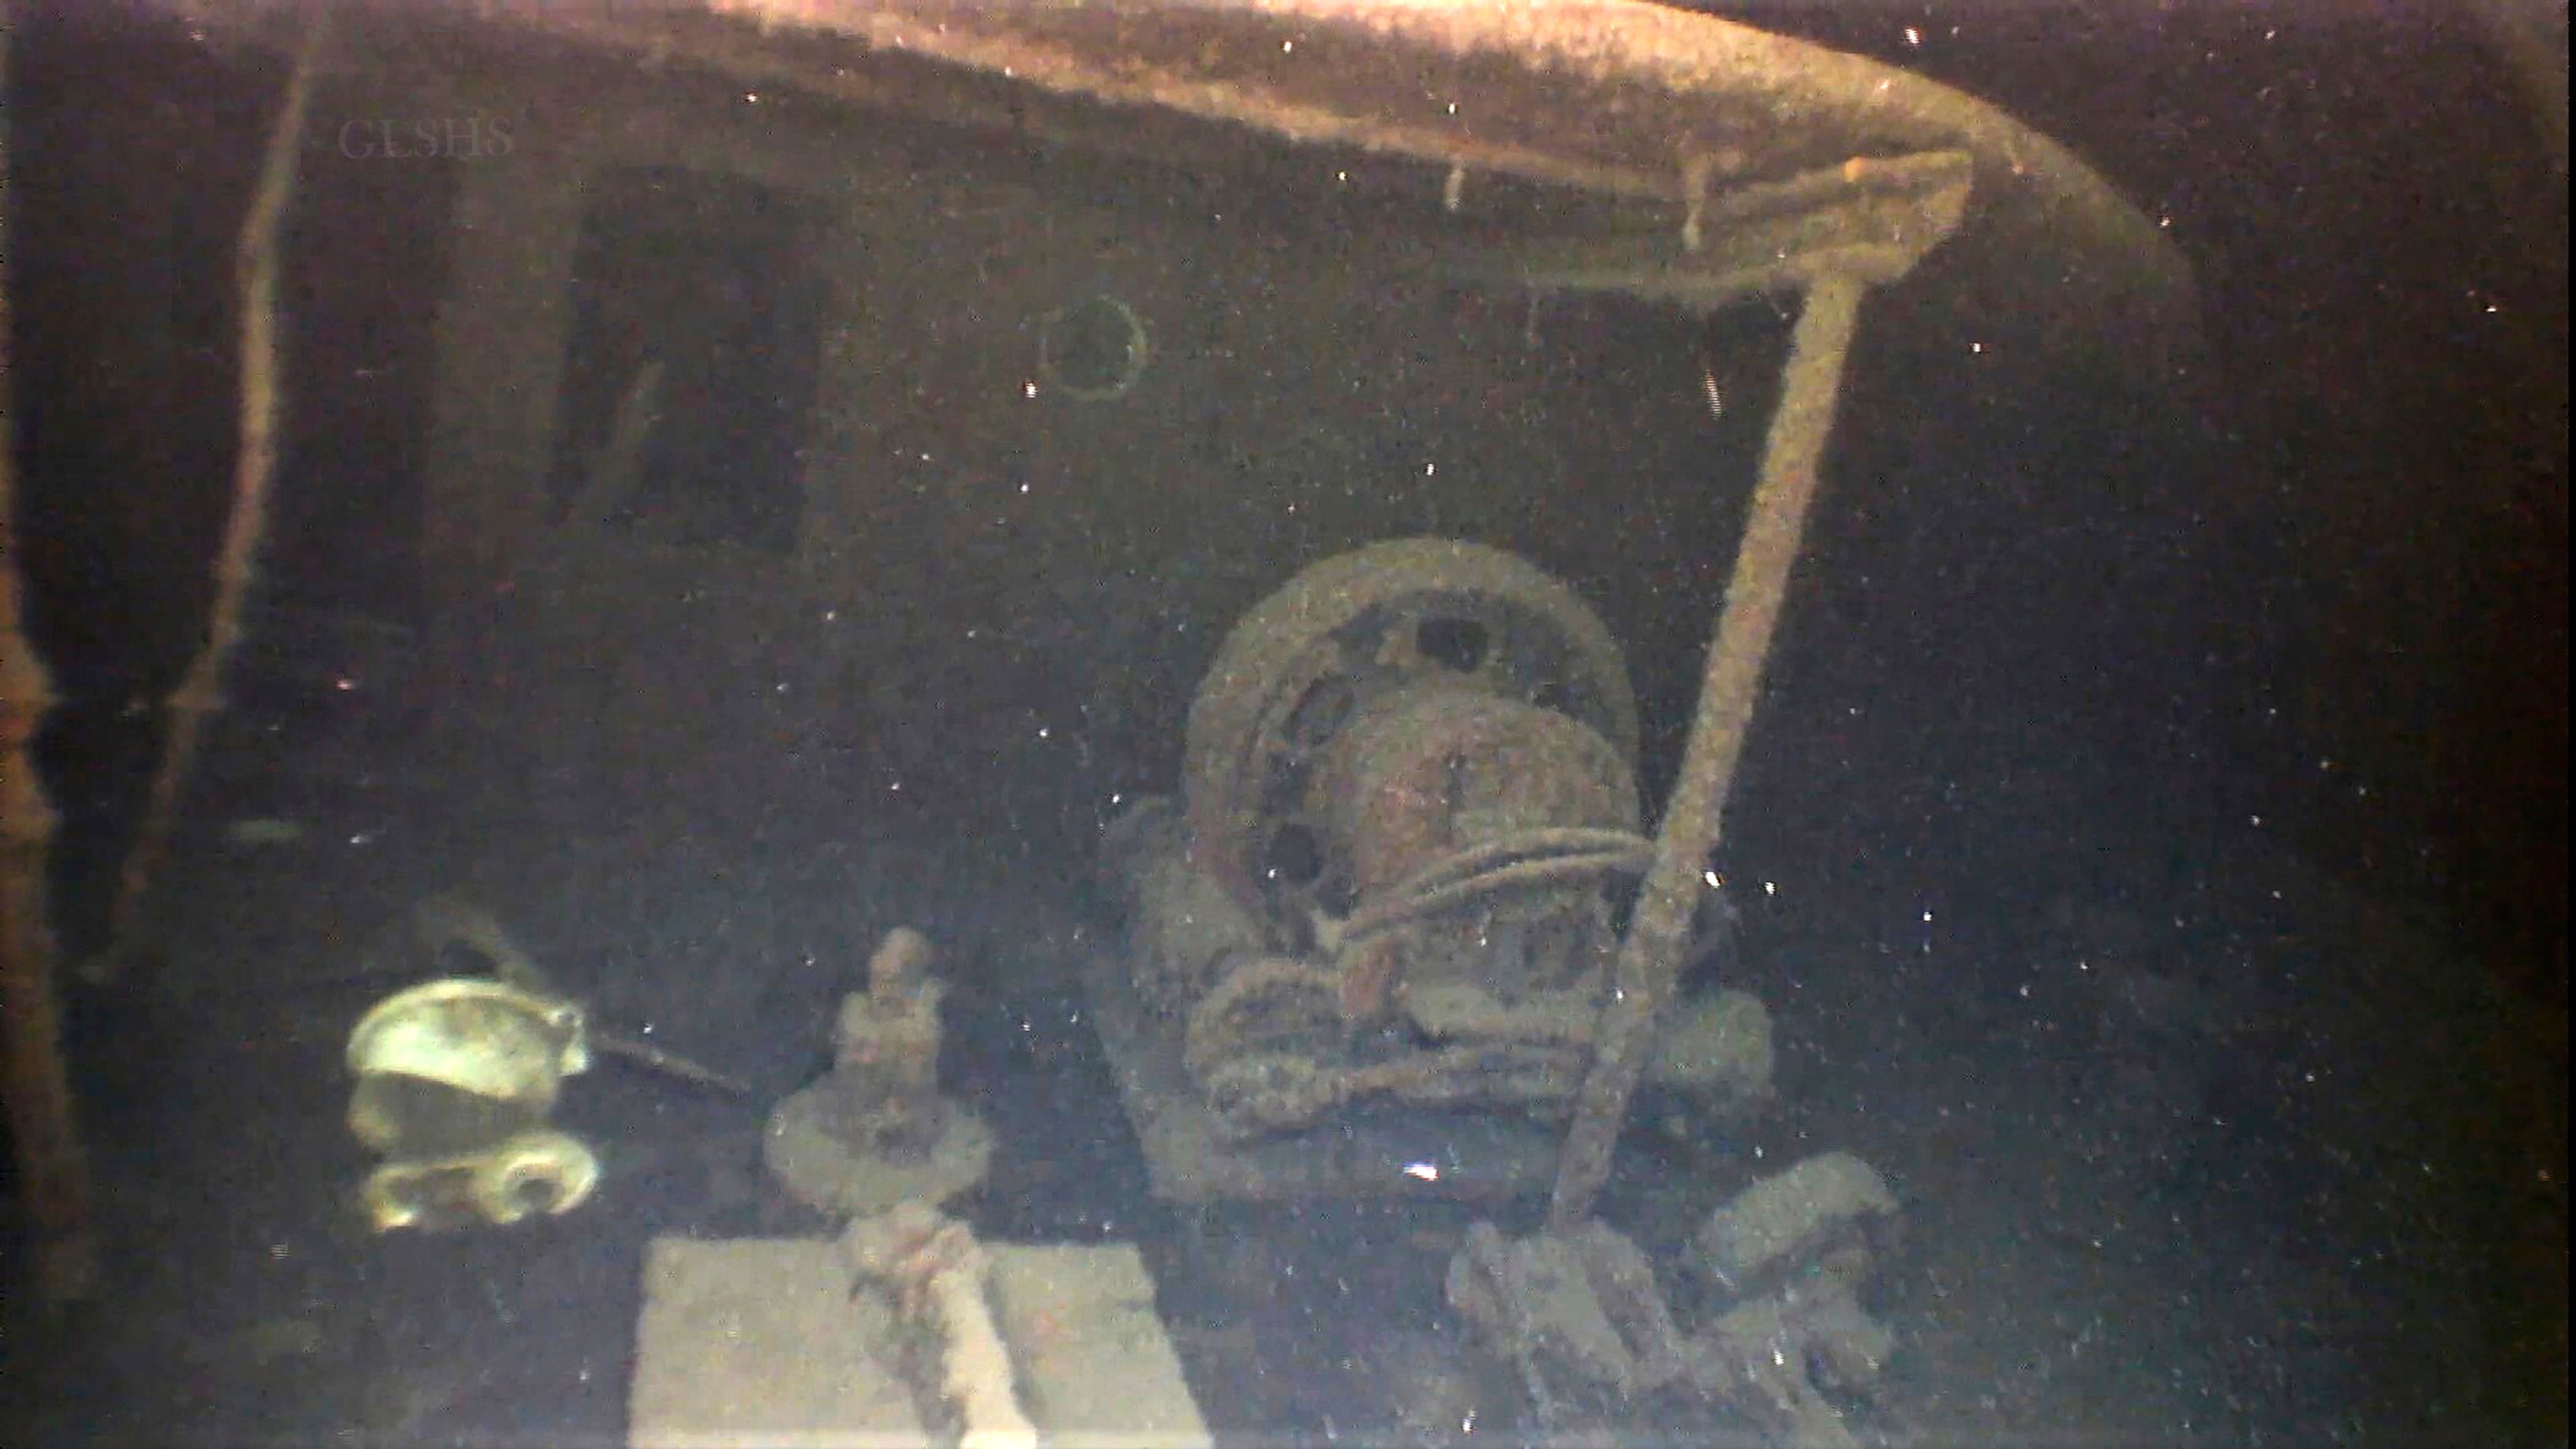 investigadores hallan al buque arlington en el fondo del lago superior